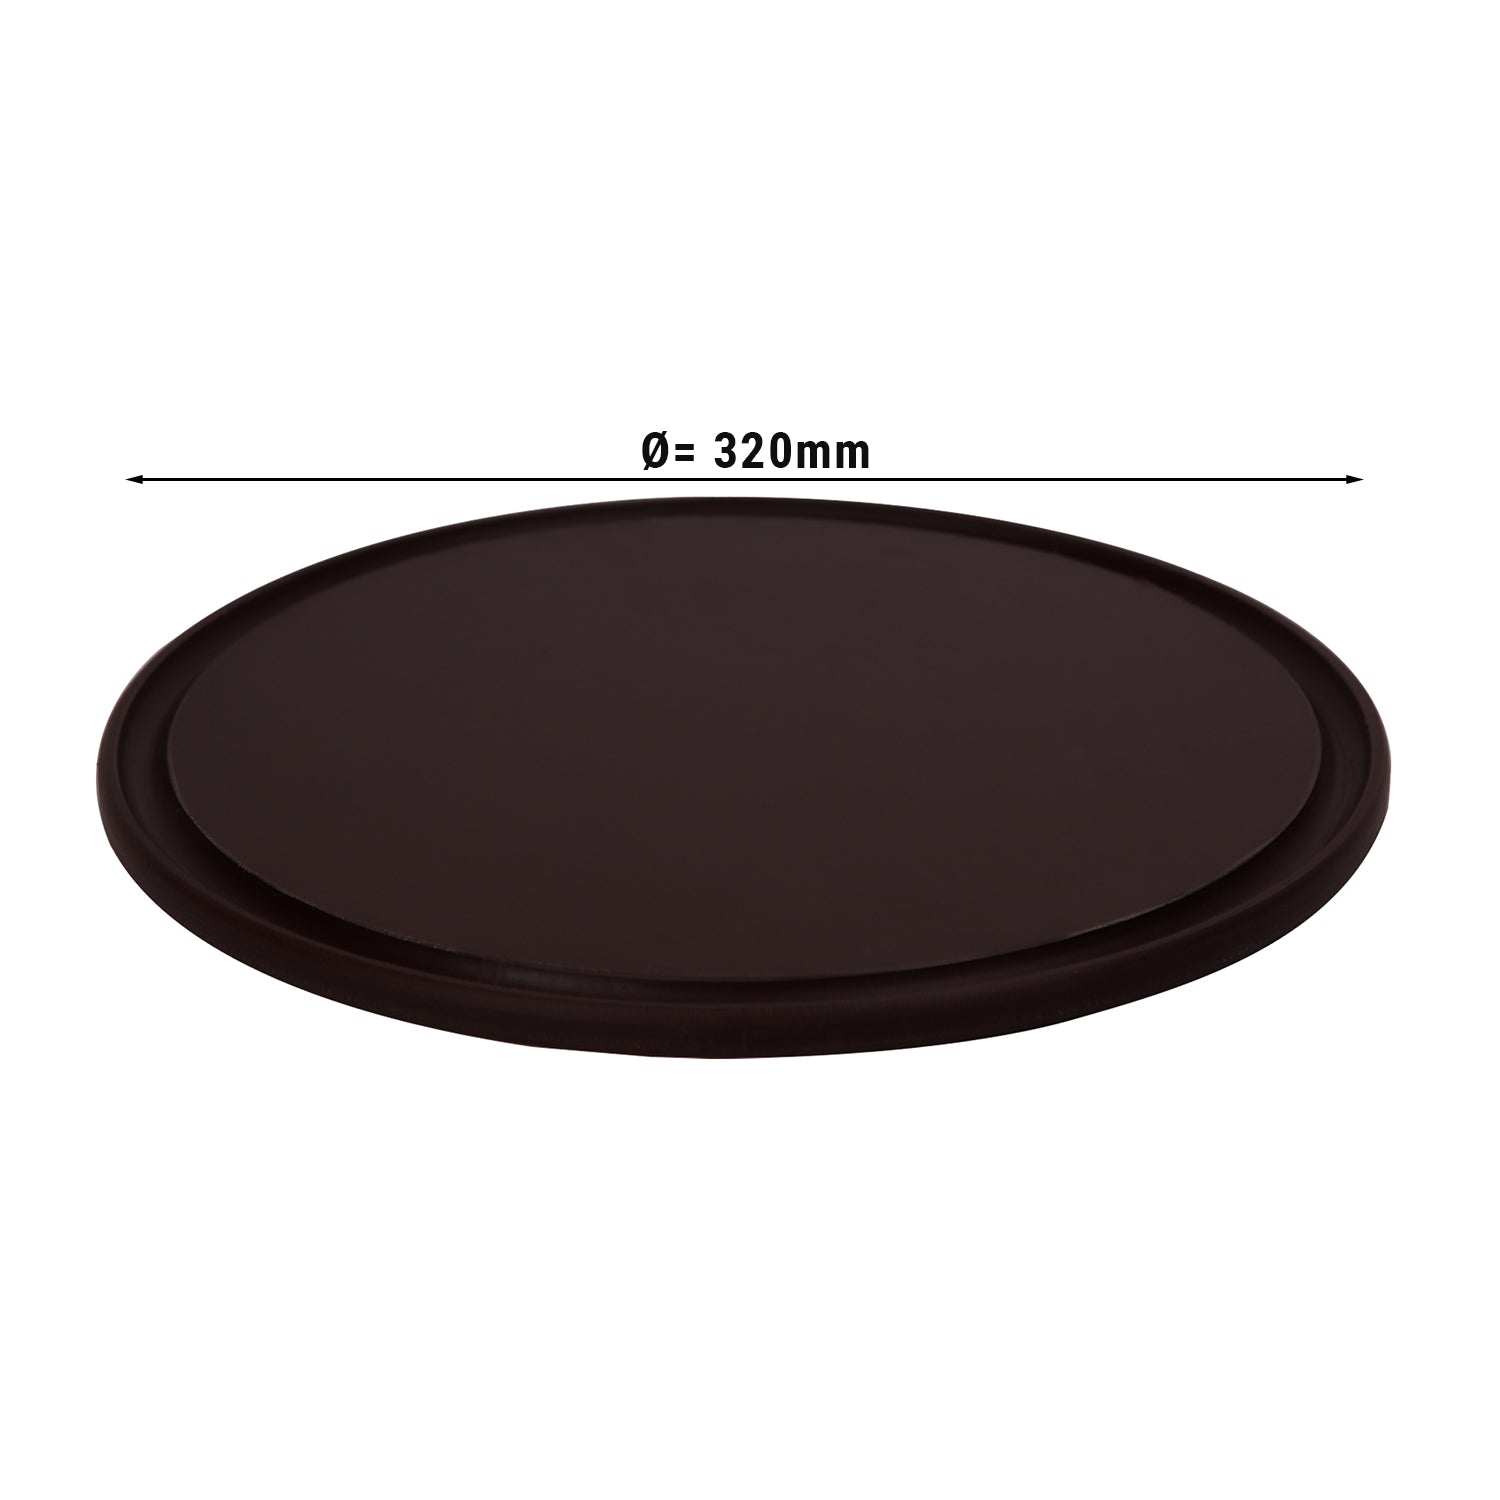 Pizzabakke - 32 cm i diameter